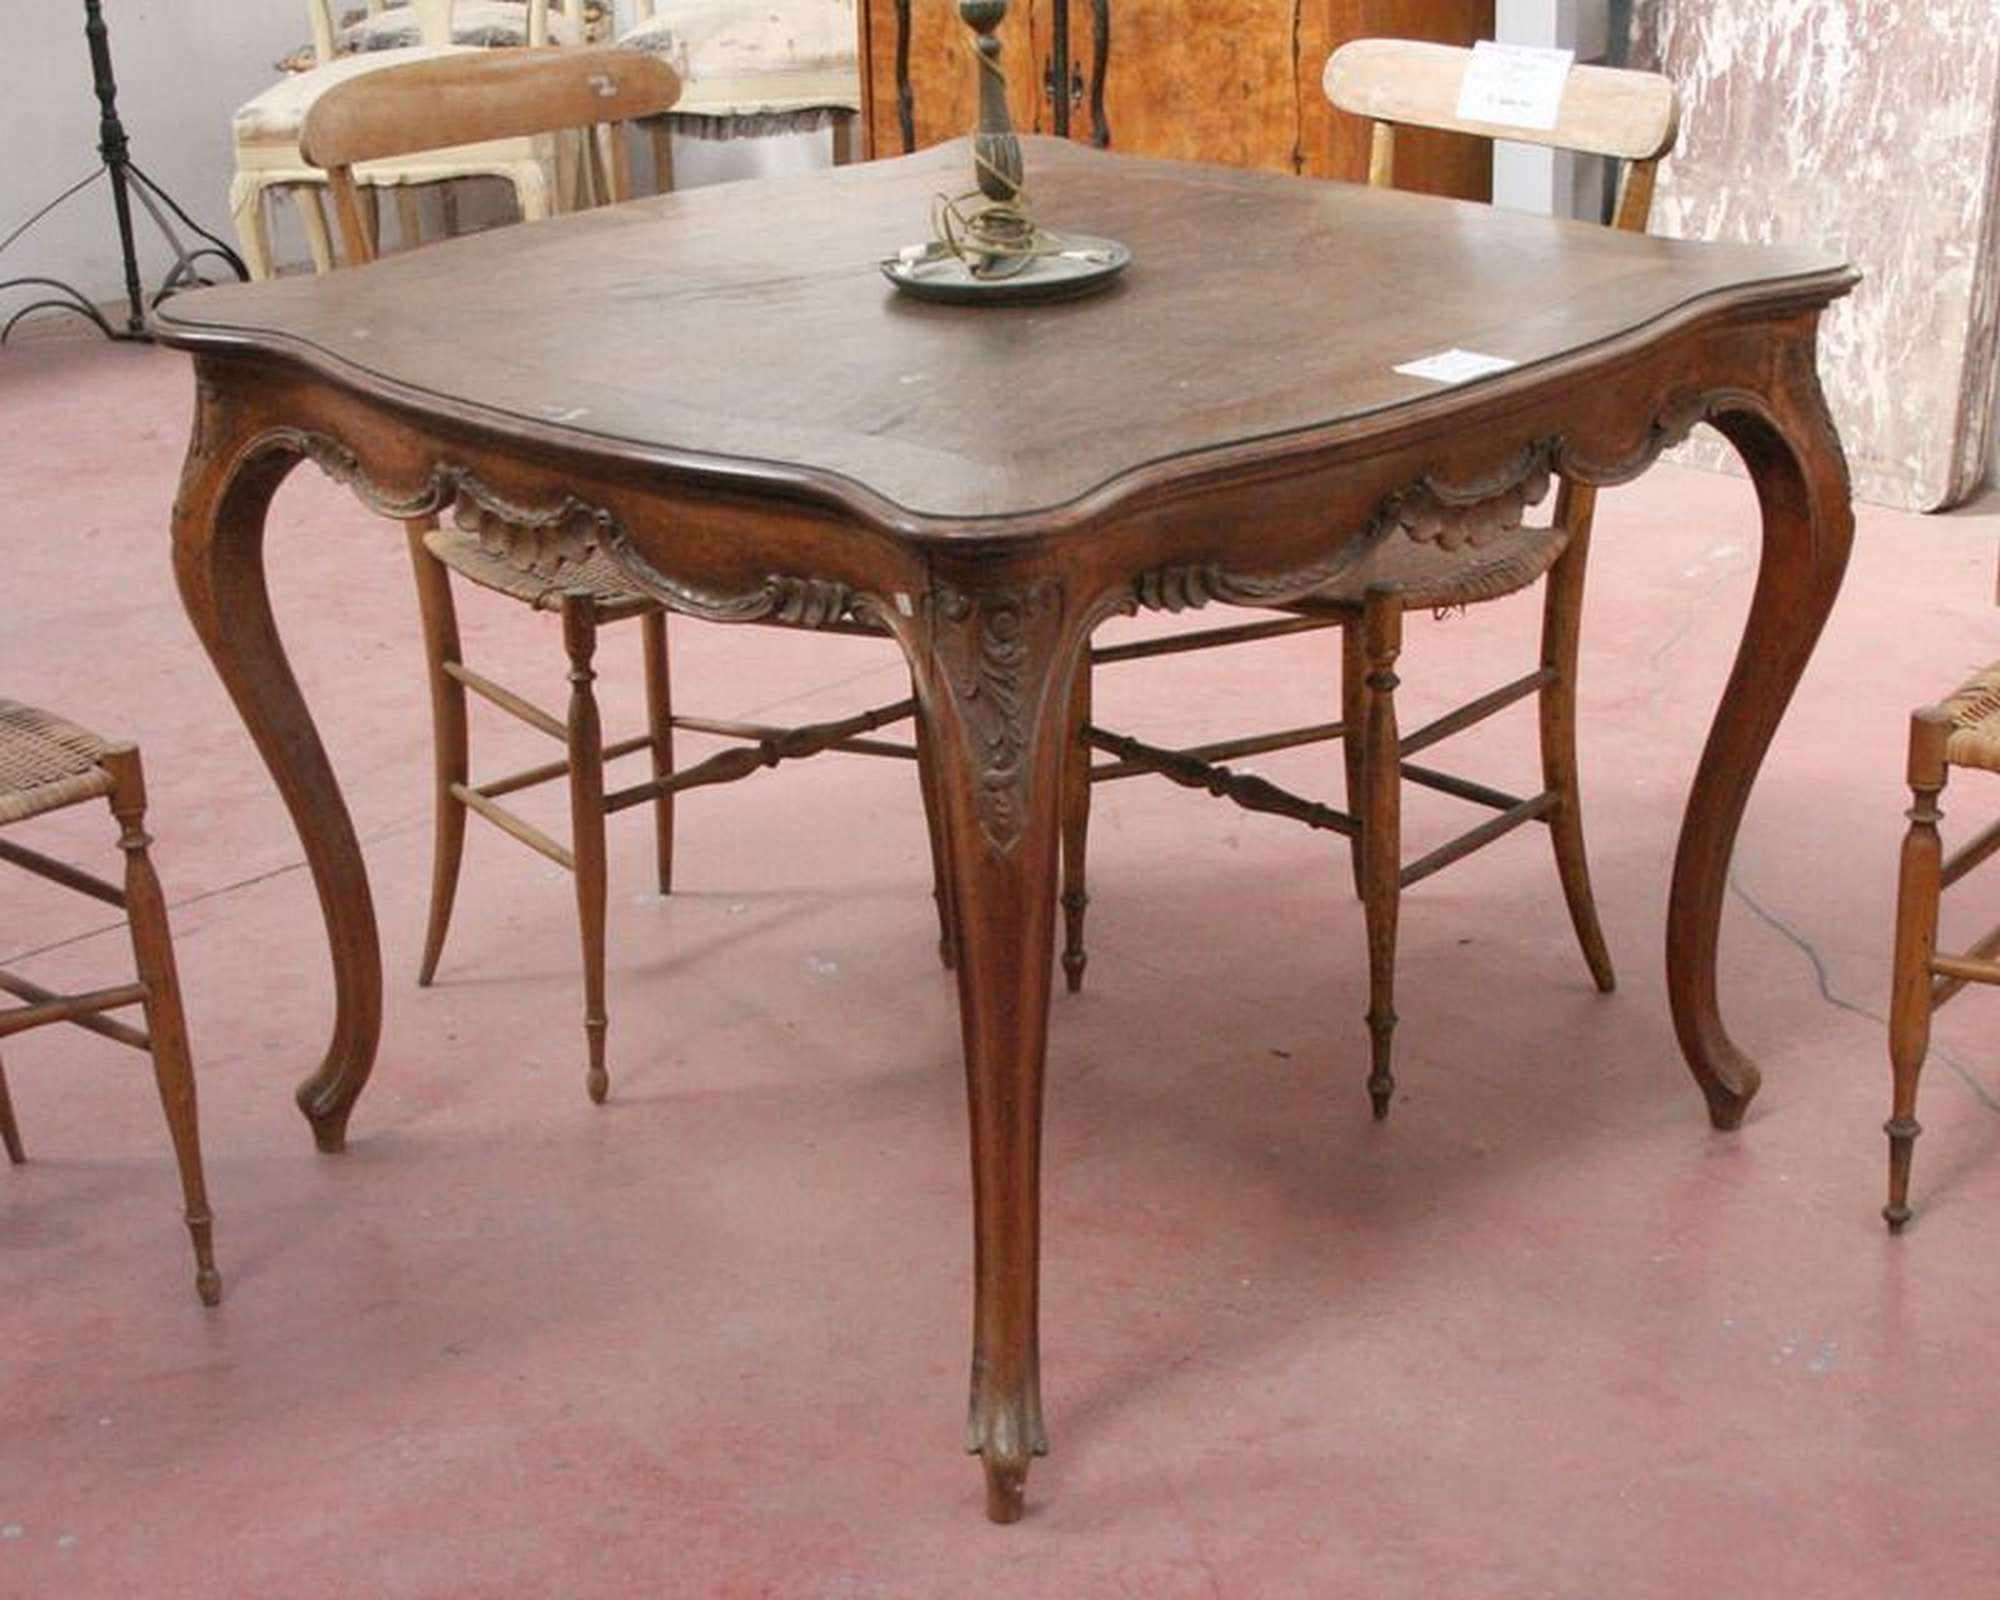 Antico tavolo in legno. Epoca inizi 1900. - Tavoli Antichi - Mobili antichi - Prodotti - Antichità Fiorillo